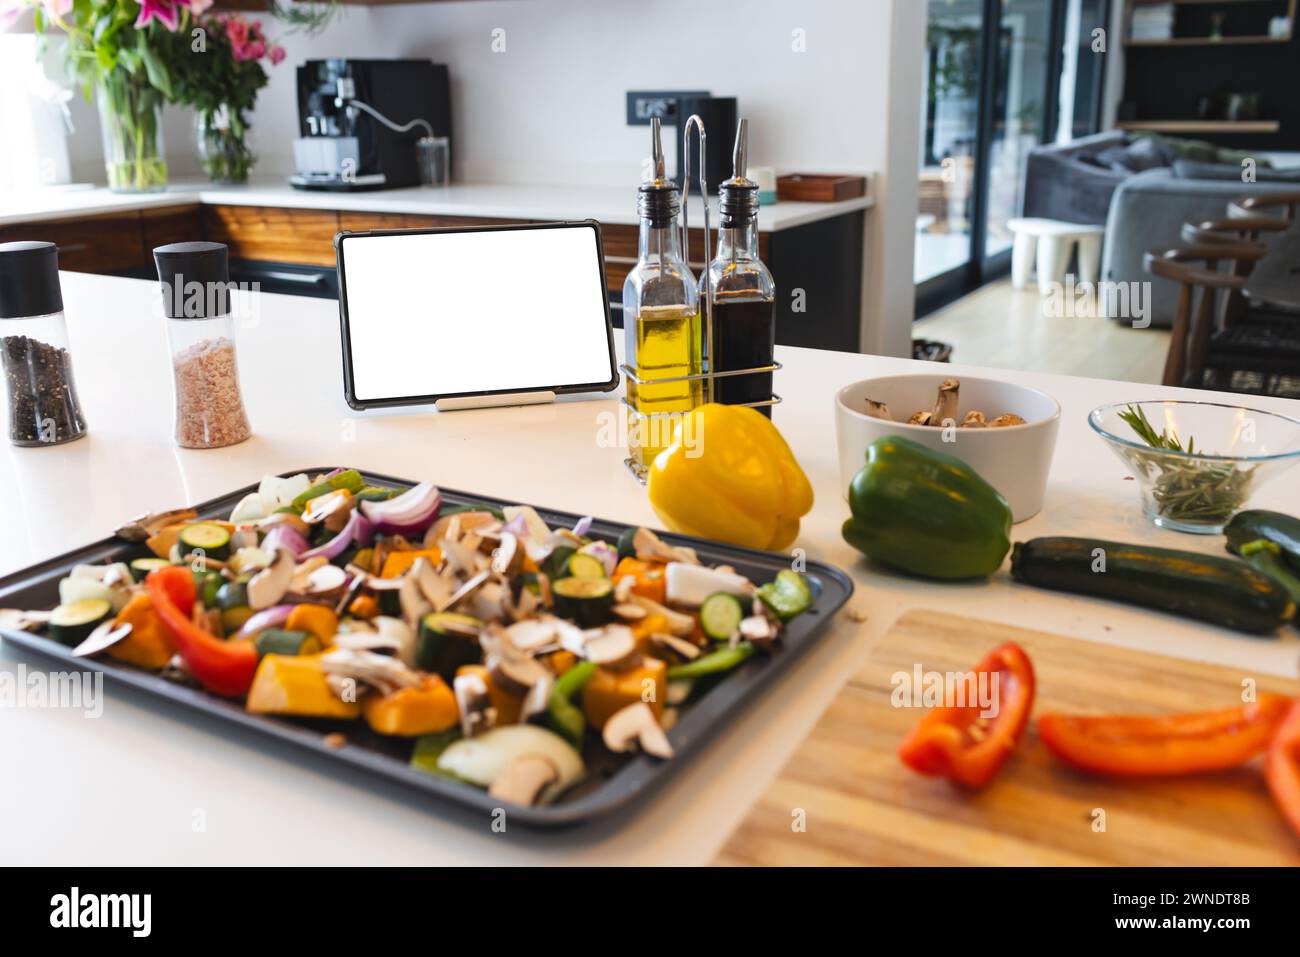 Une variété de légumes hachés sont prêts sur un plateau, avec une tablette et des huiles de cuisson à proximité Banque D'Images